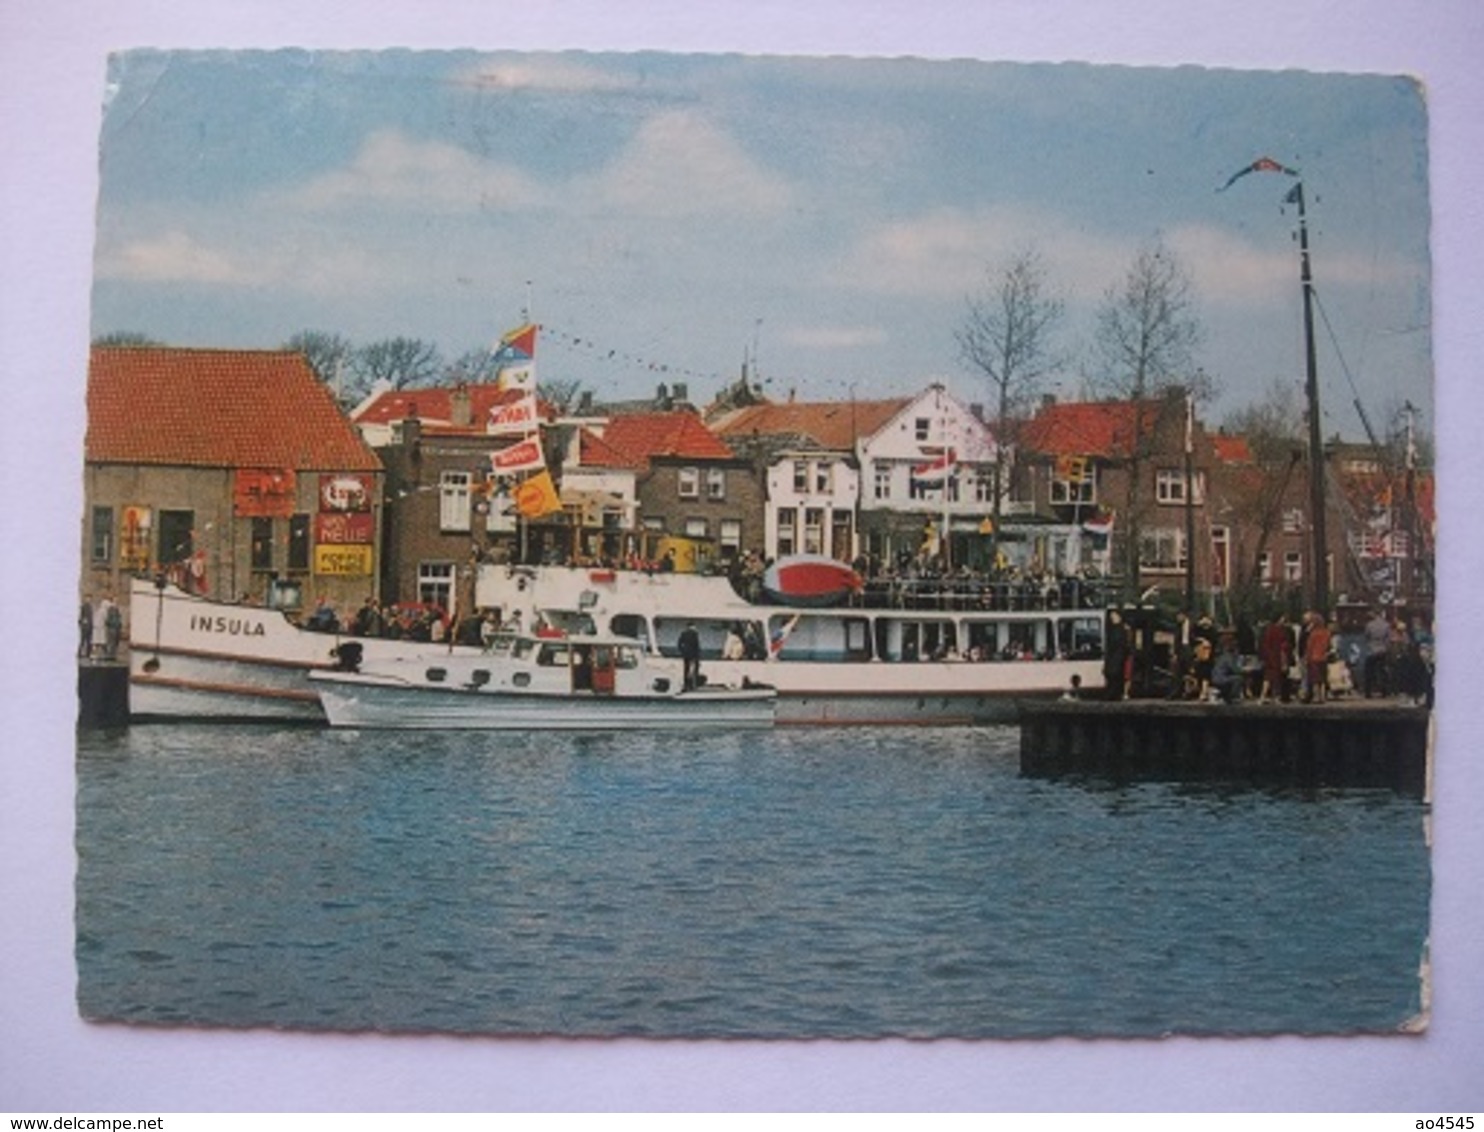 N64 Ansichtkaart Urk - Toeristenboot Insula - 1972 - Urk